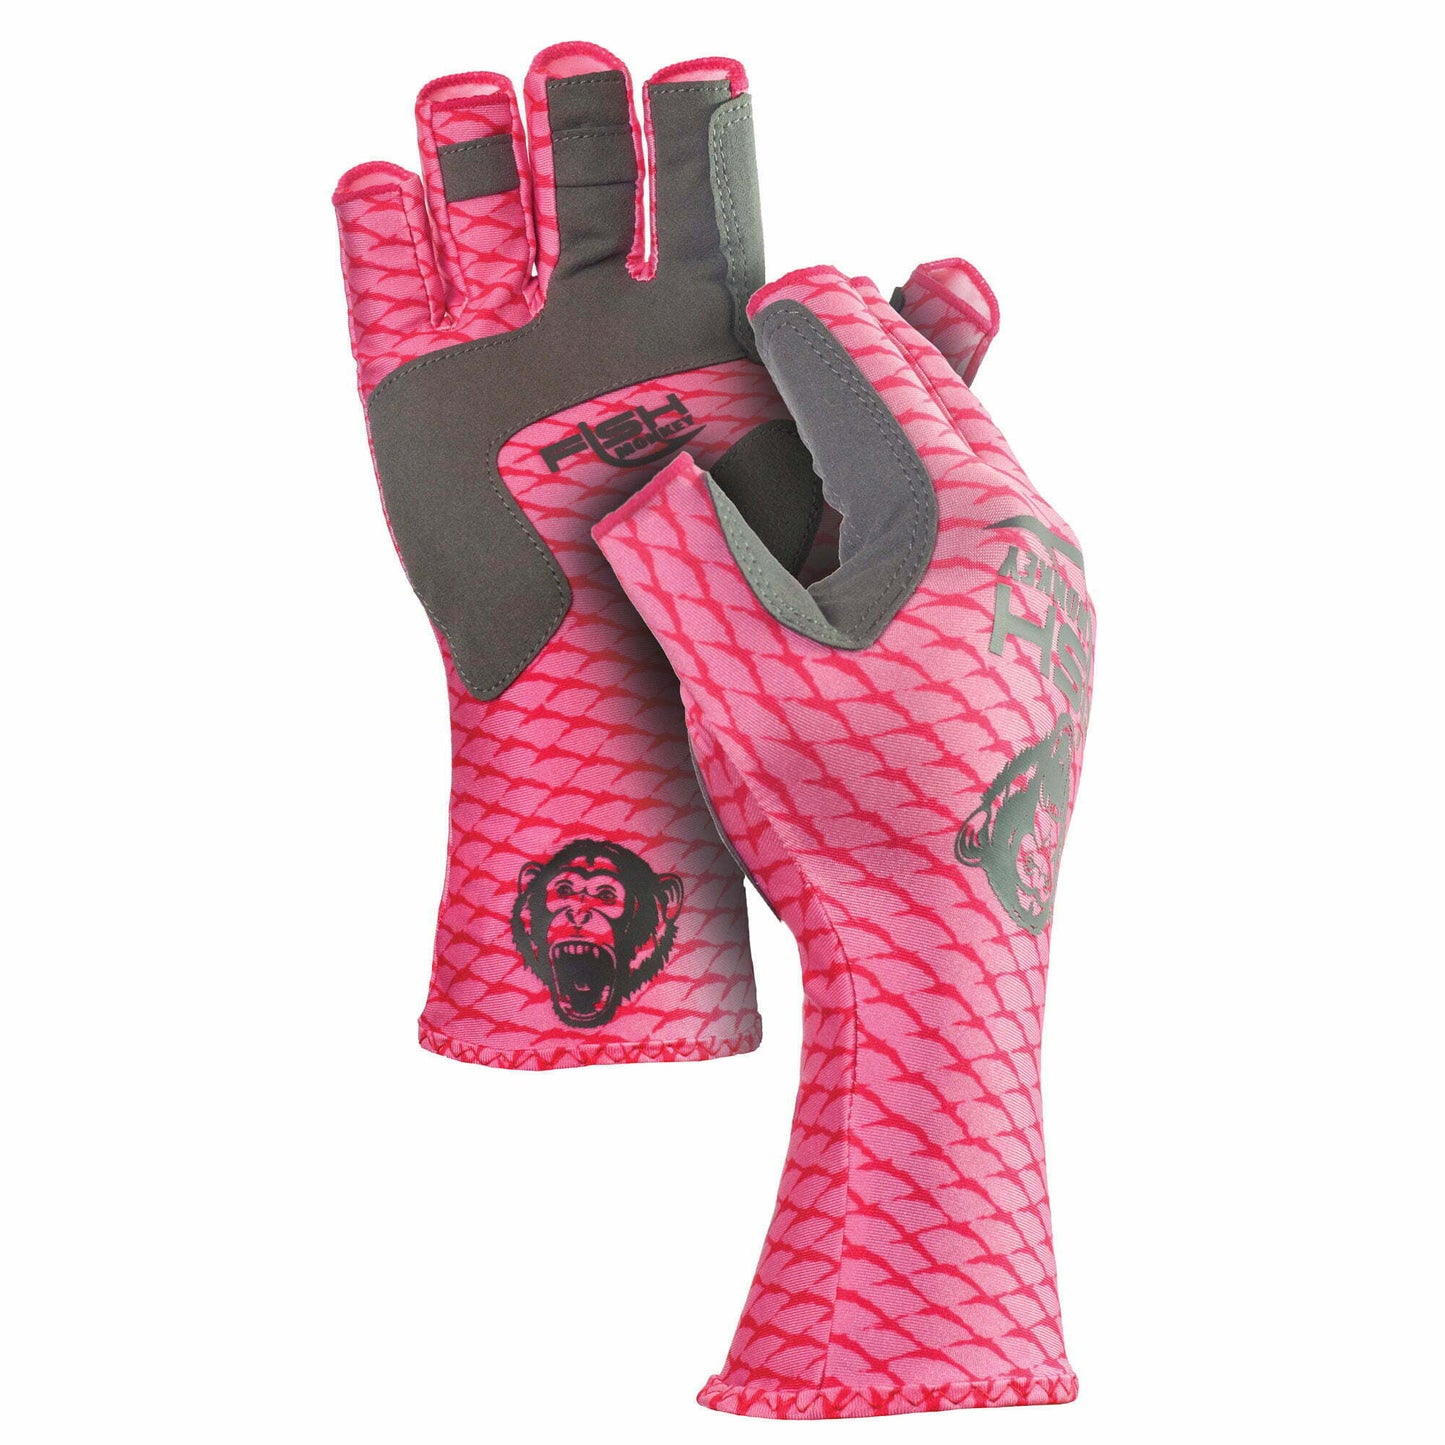 https://dogfishtacklecompany.com/cdn/shop/files/Half-Finger-Guide-Glove-Composite-Pink.jpg?v=1688840564&width=1445